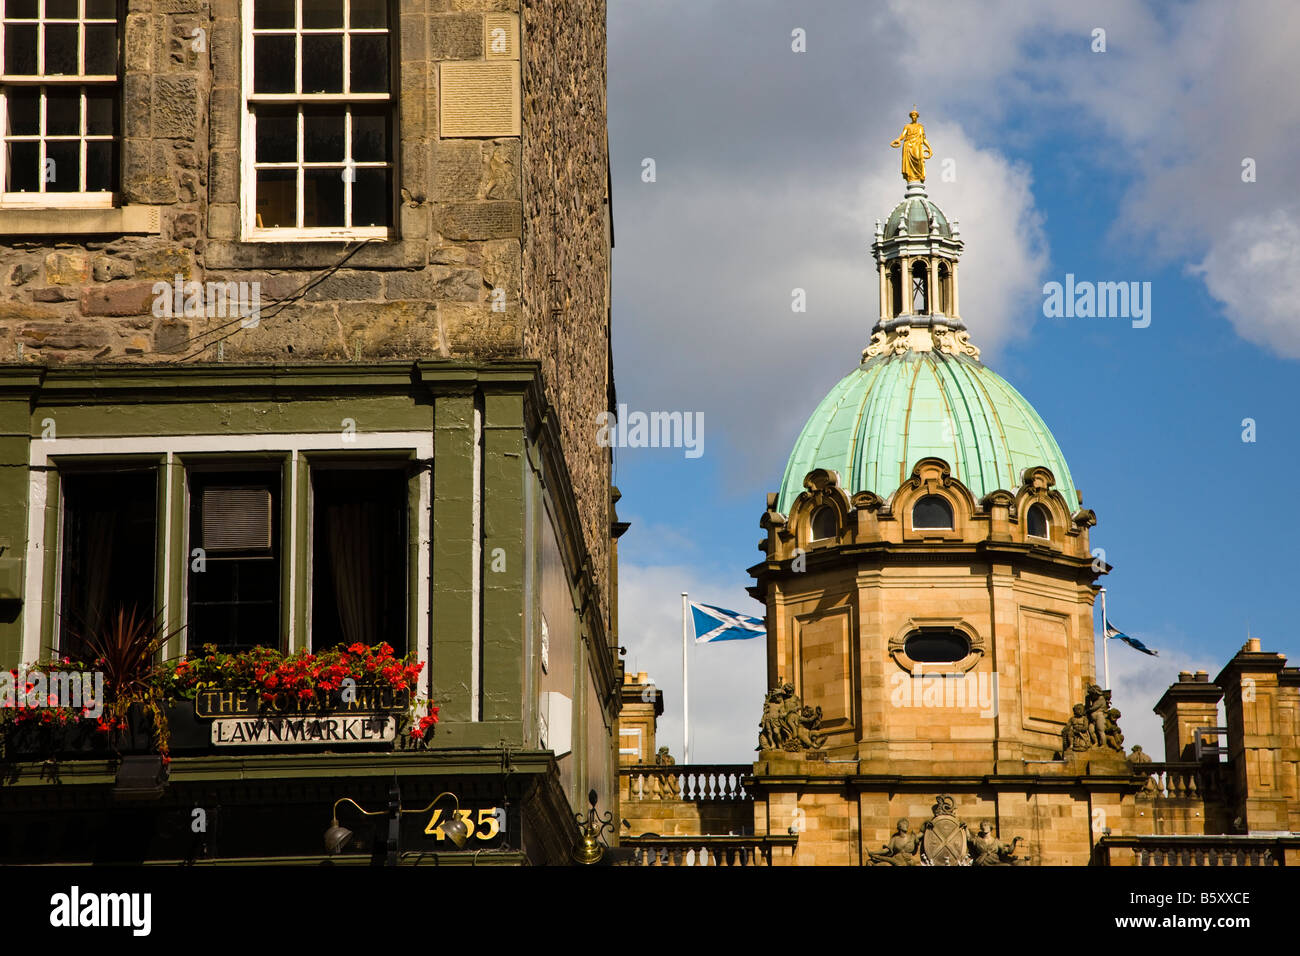 Bank of Scotland-Hauptquartier in der Nähe von The Royal Mile Lawnmarket Edinburgh Schottland Stockfoto